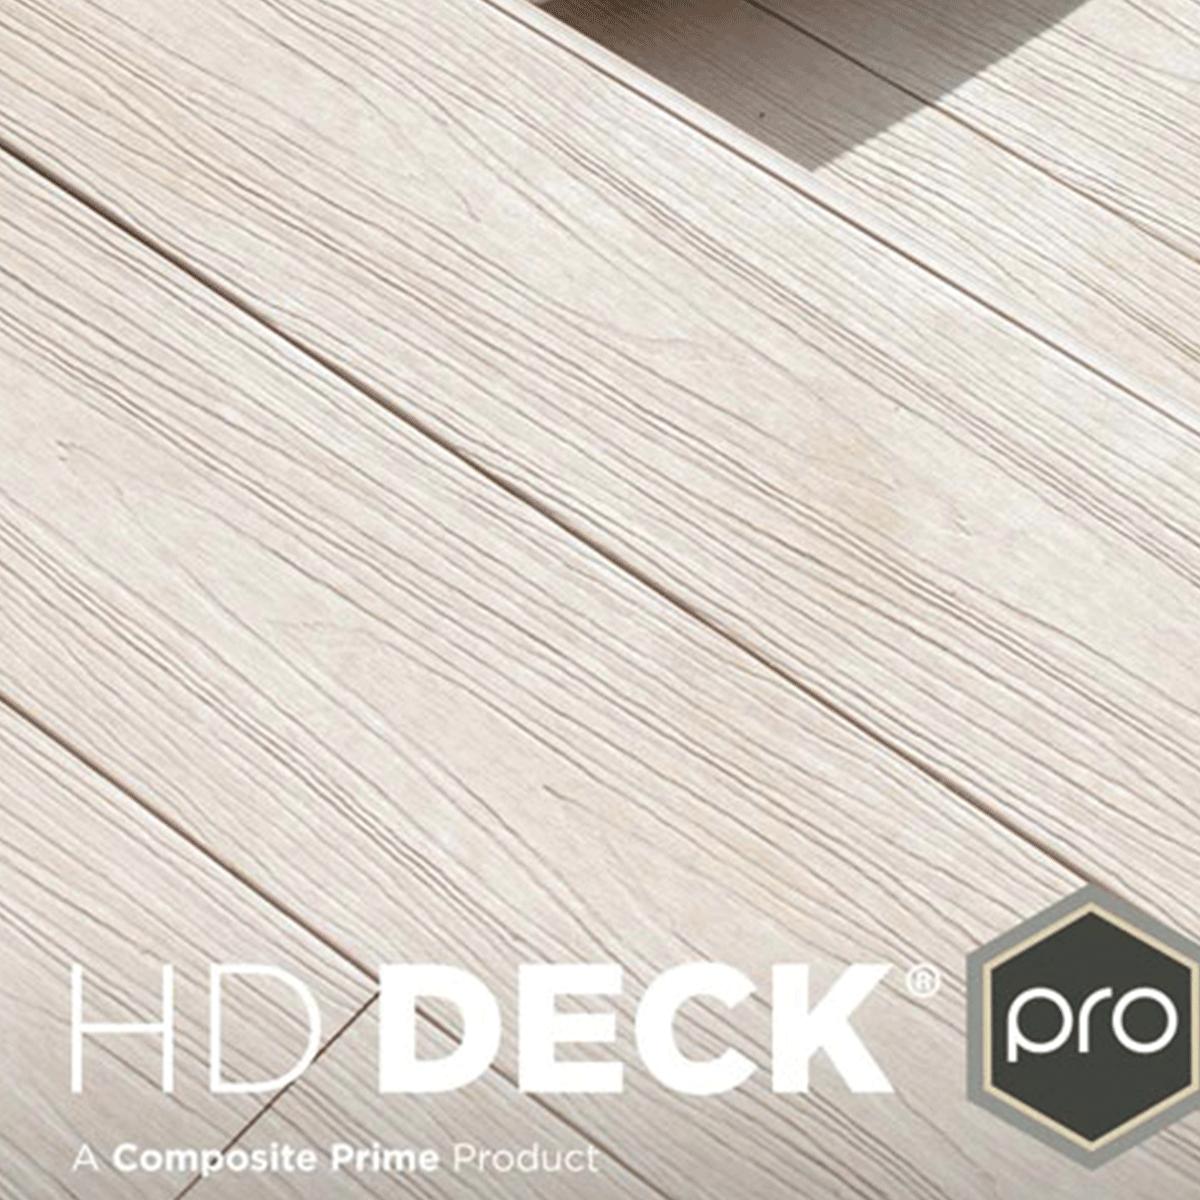 HD Deck Pro